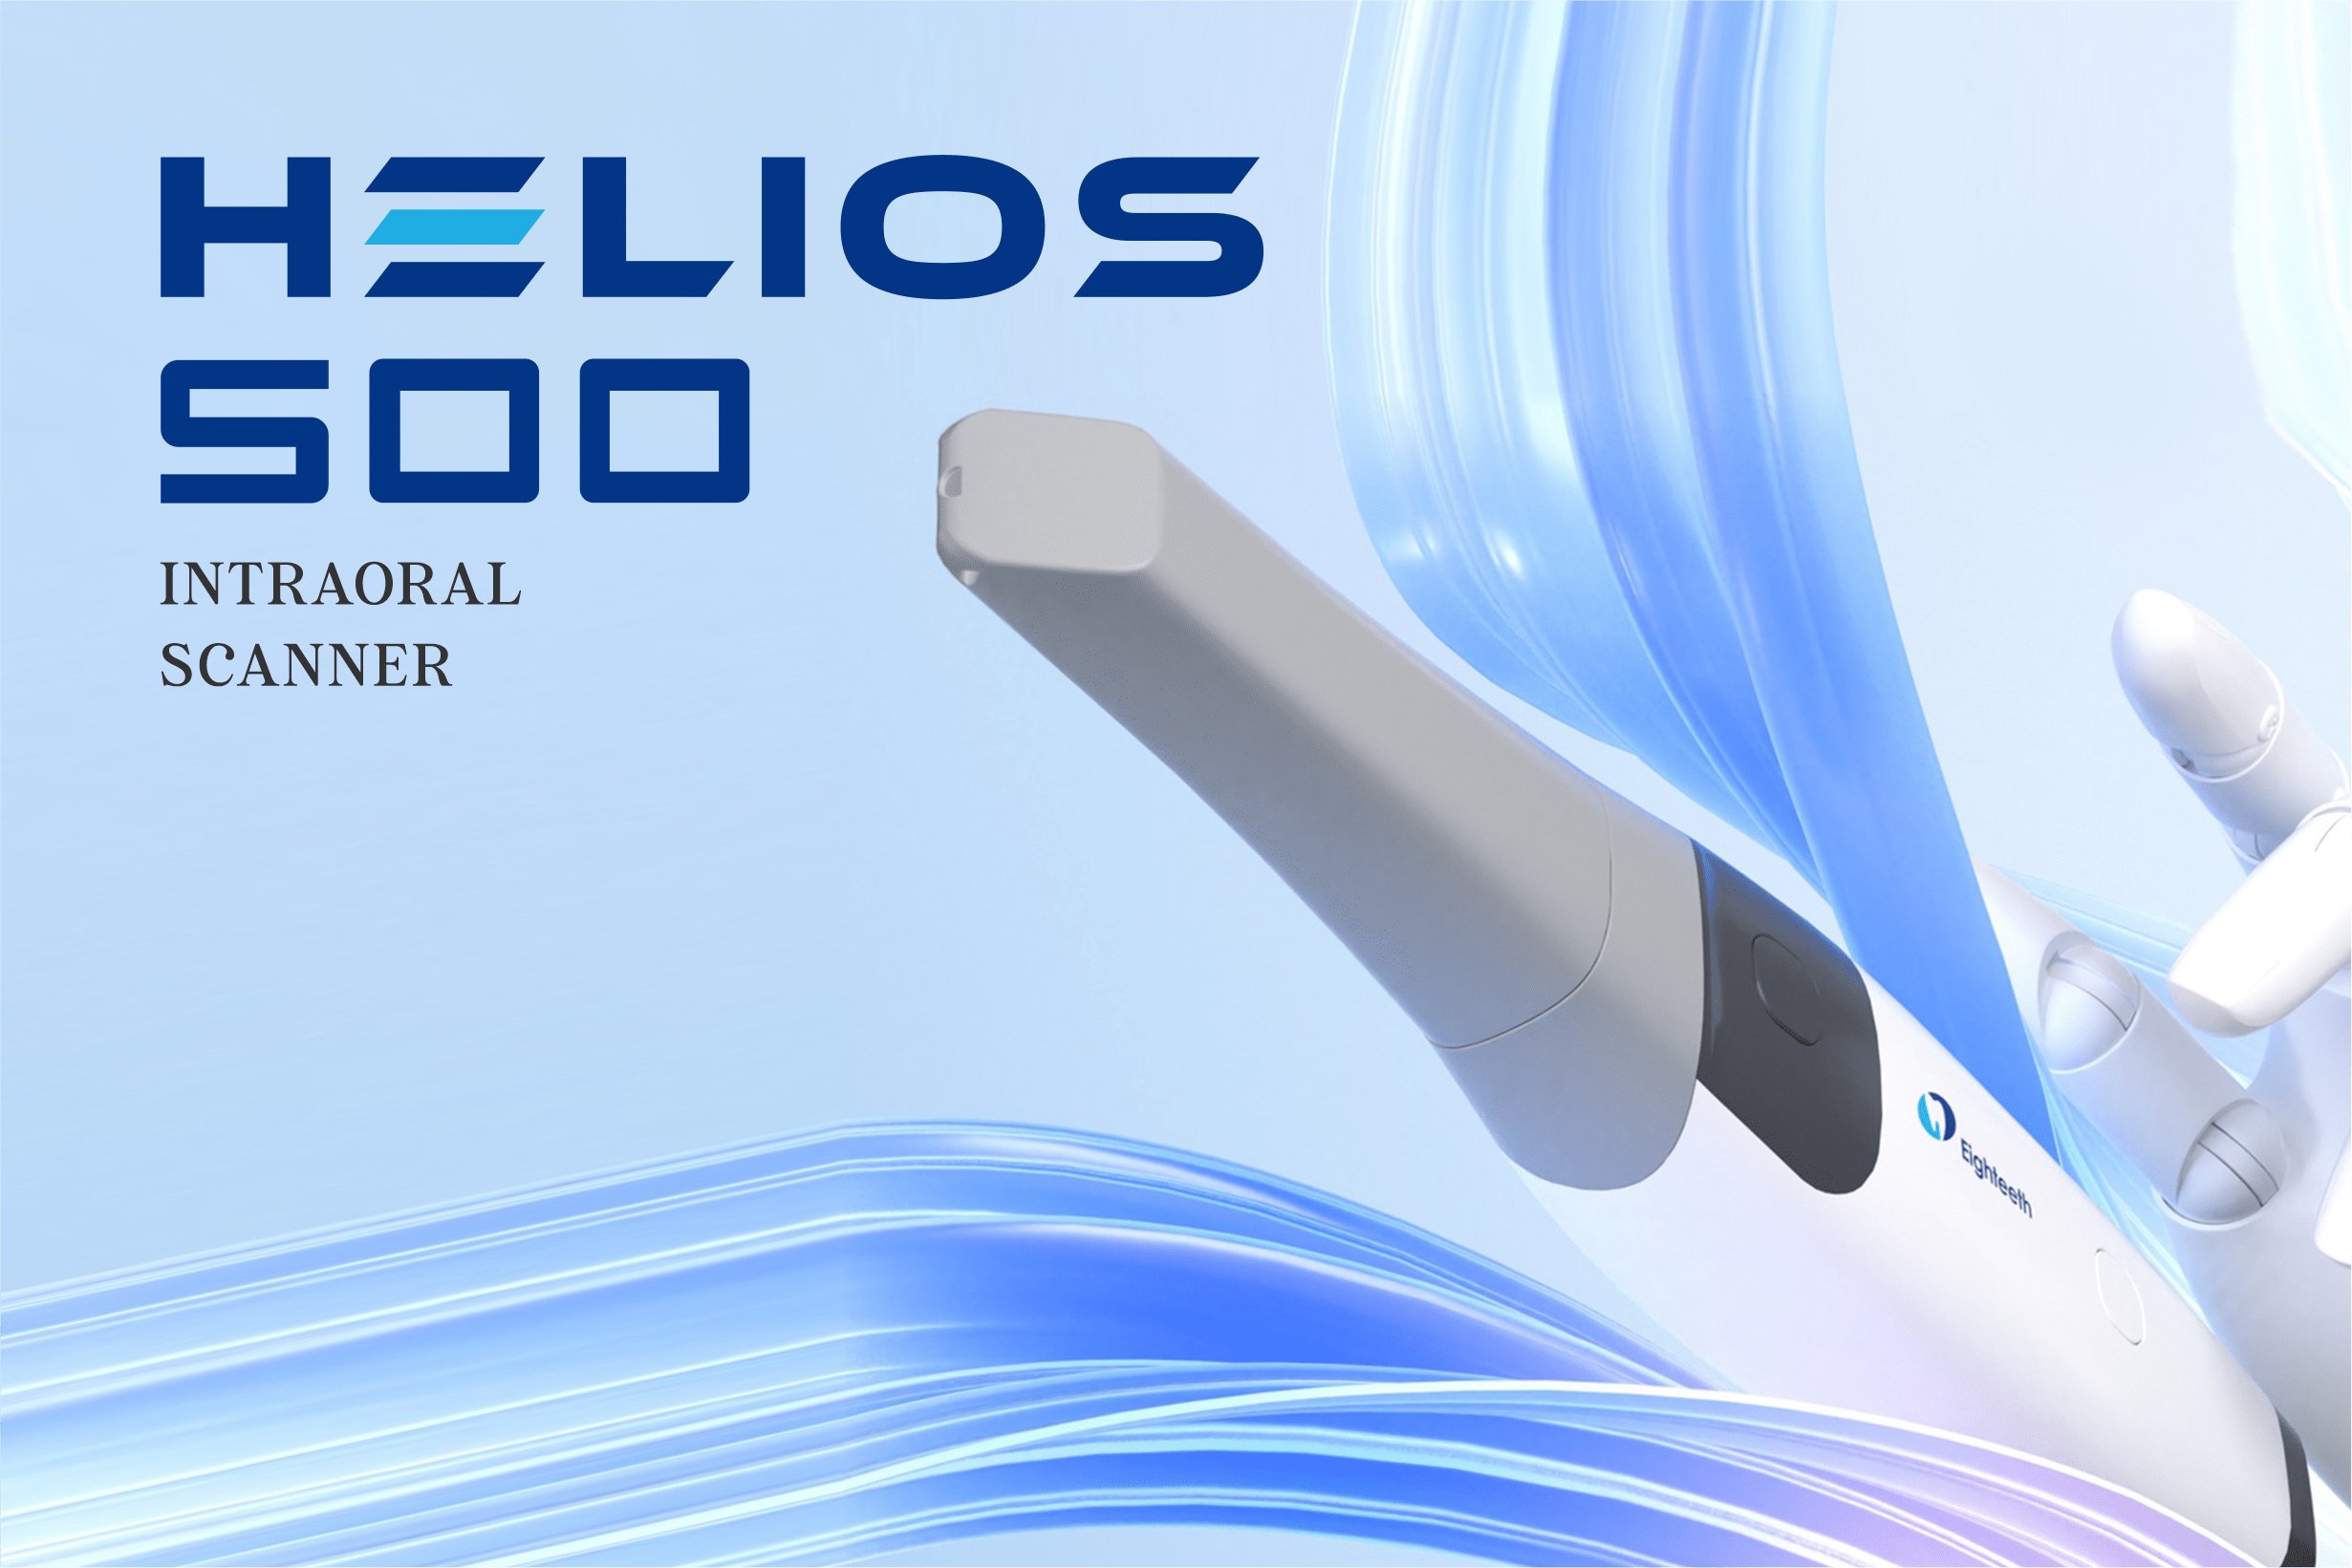 Helios 500: Intraoral Scanner